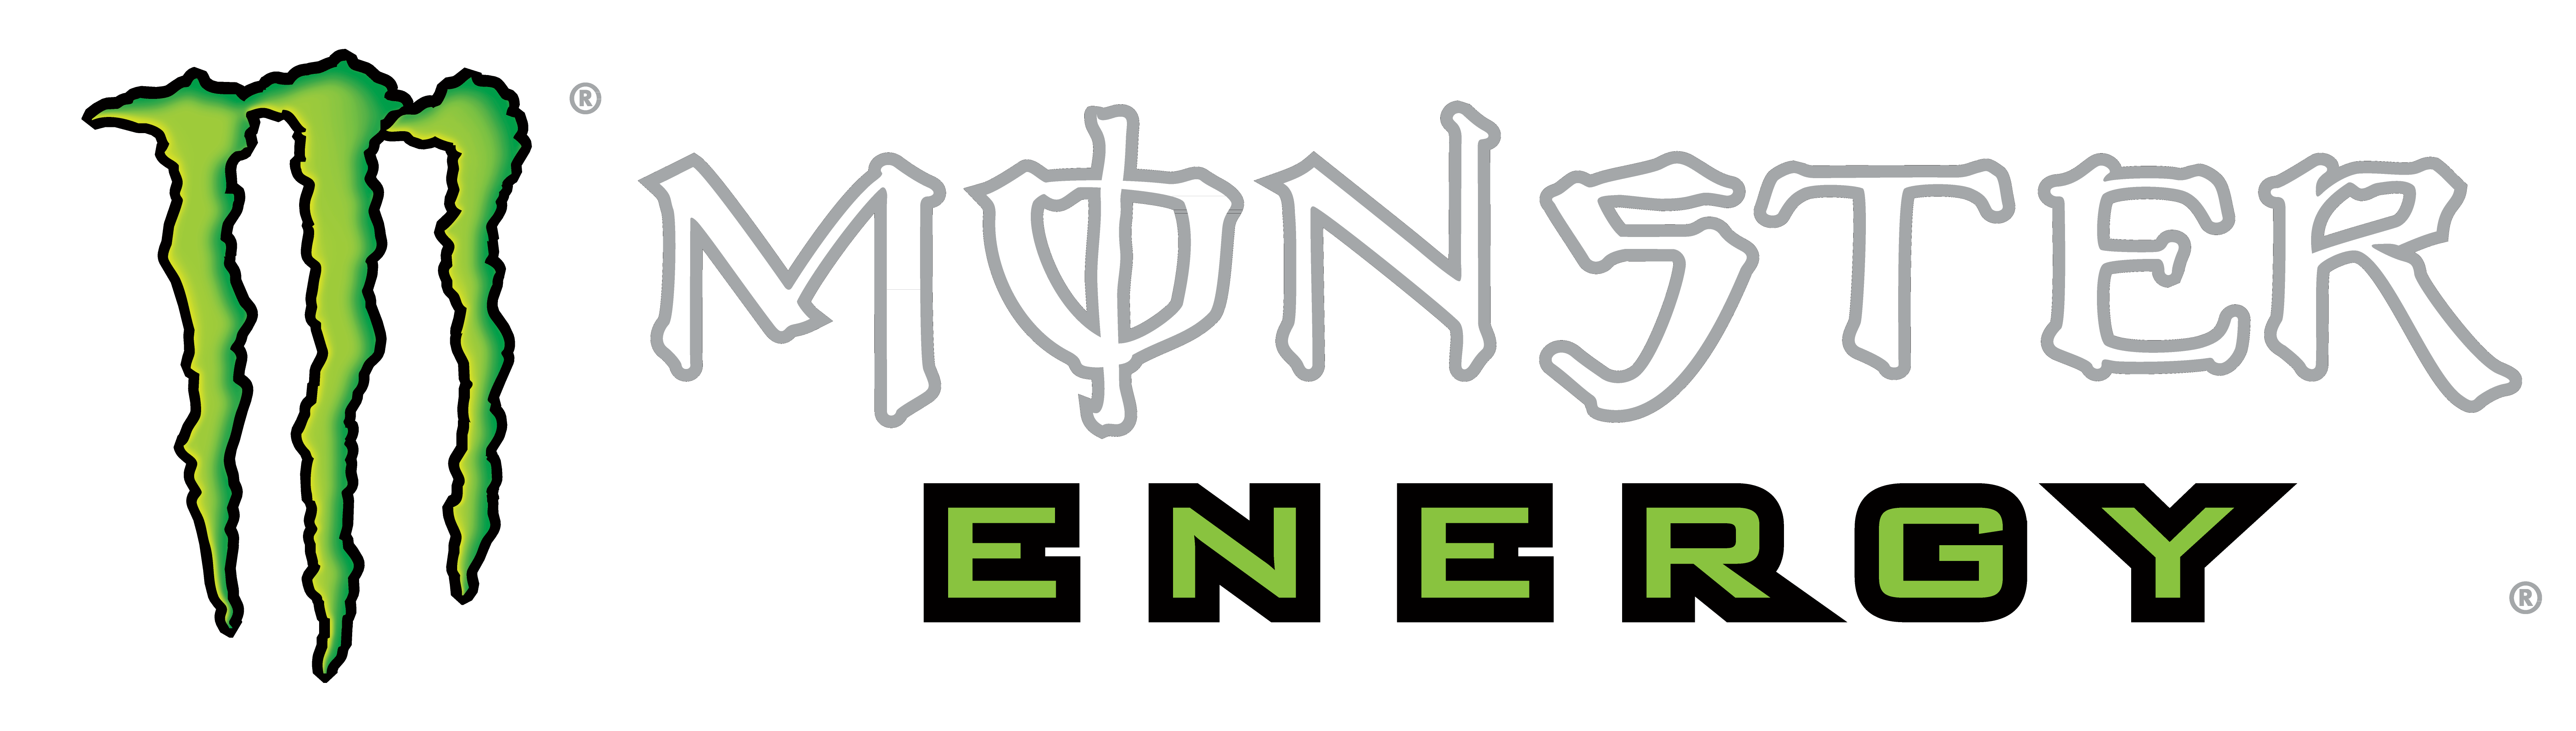 Логотип энергетика на прозрачном фоне фото